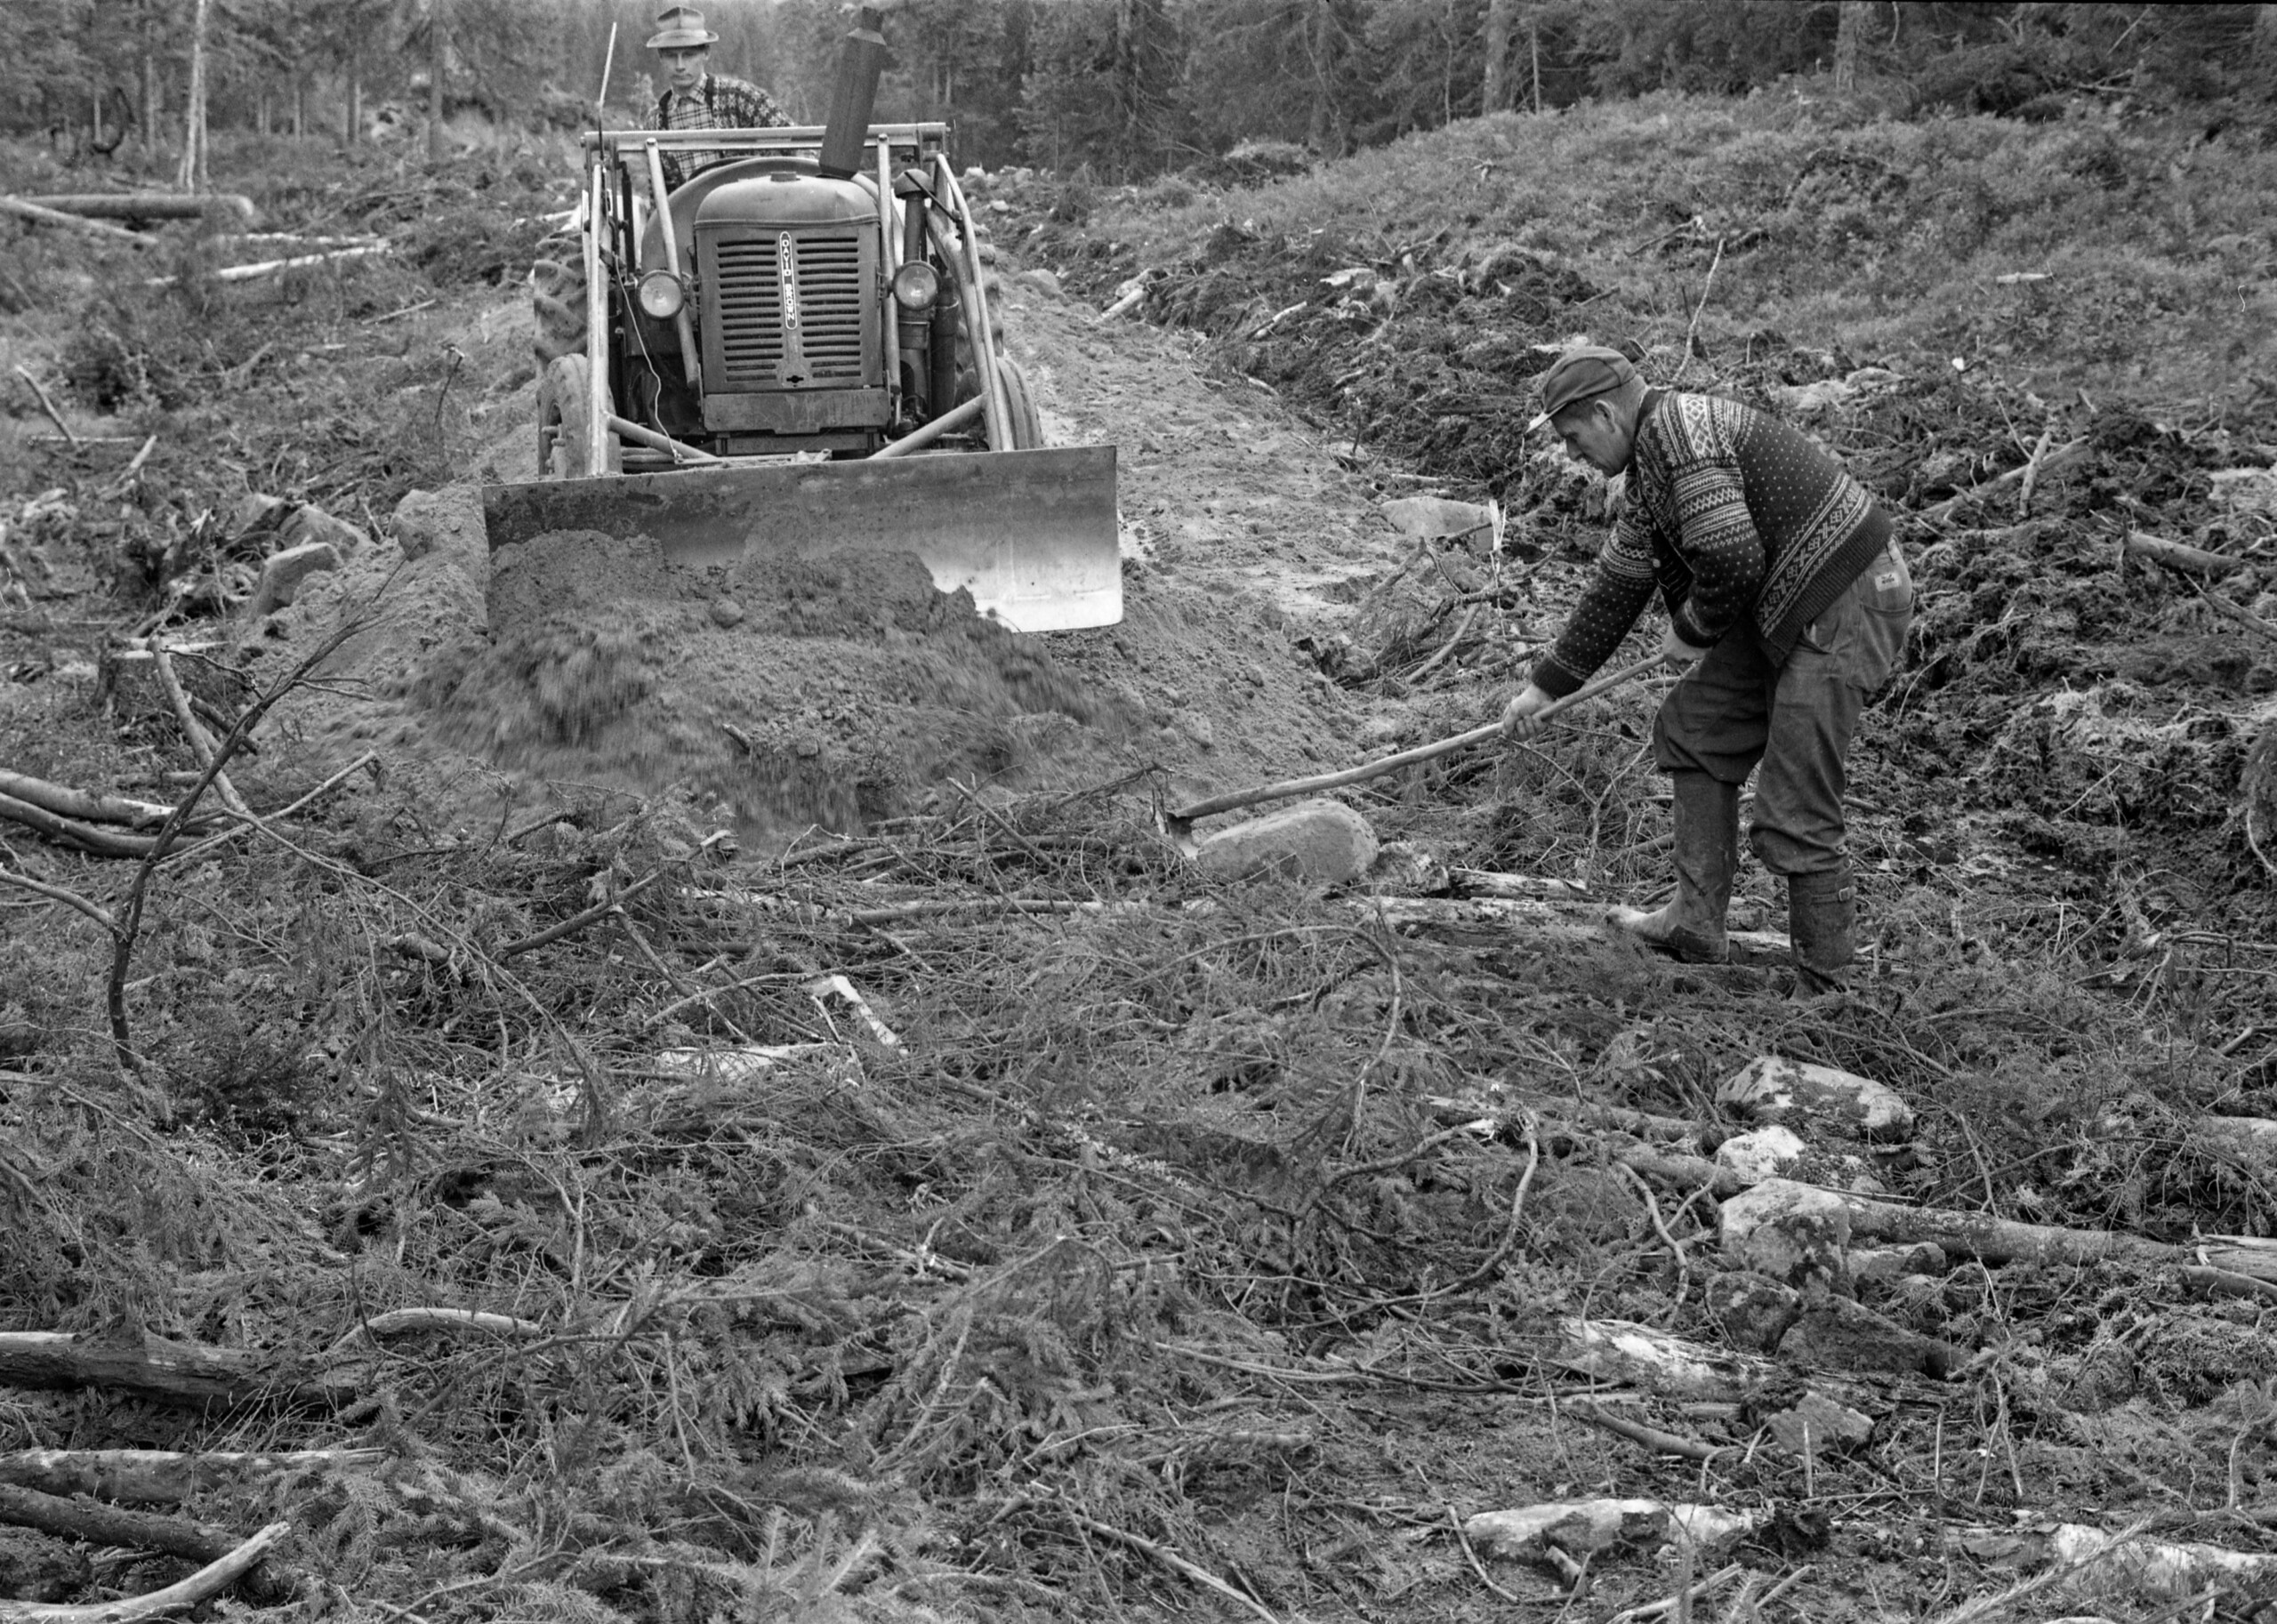 Vegbygging på fuktig mark i Treschow Fritzøes skoger i 1964. Her ser vi to menn og en traktor i aktivitet ved det som på dette tidspunktet var fronten i vegprosjektet. Fotografiet viser hvordan man hadde lagt hogstavfall – småtrær og kvist – i det som skulle bli veglinja, for å gi bedre bæring for de massene vegen skulle bygges av. Disse massene ble skjøvet på plass ved hjelp av en David Brown-traktor med frontmontert skjær med bistand fra en mann med krafse.